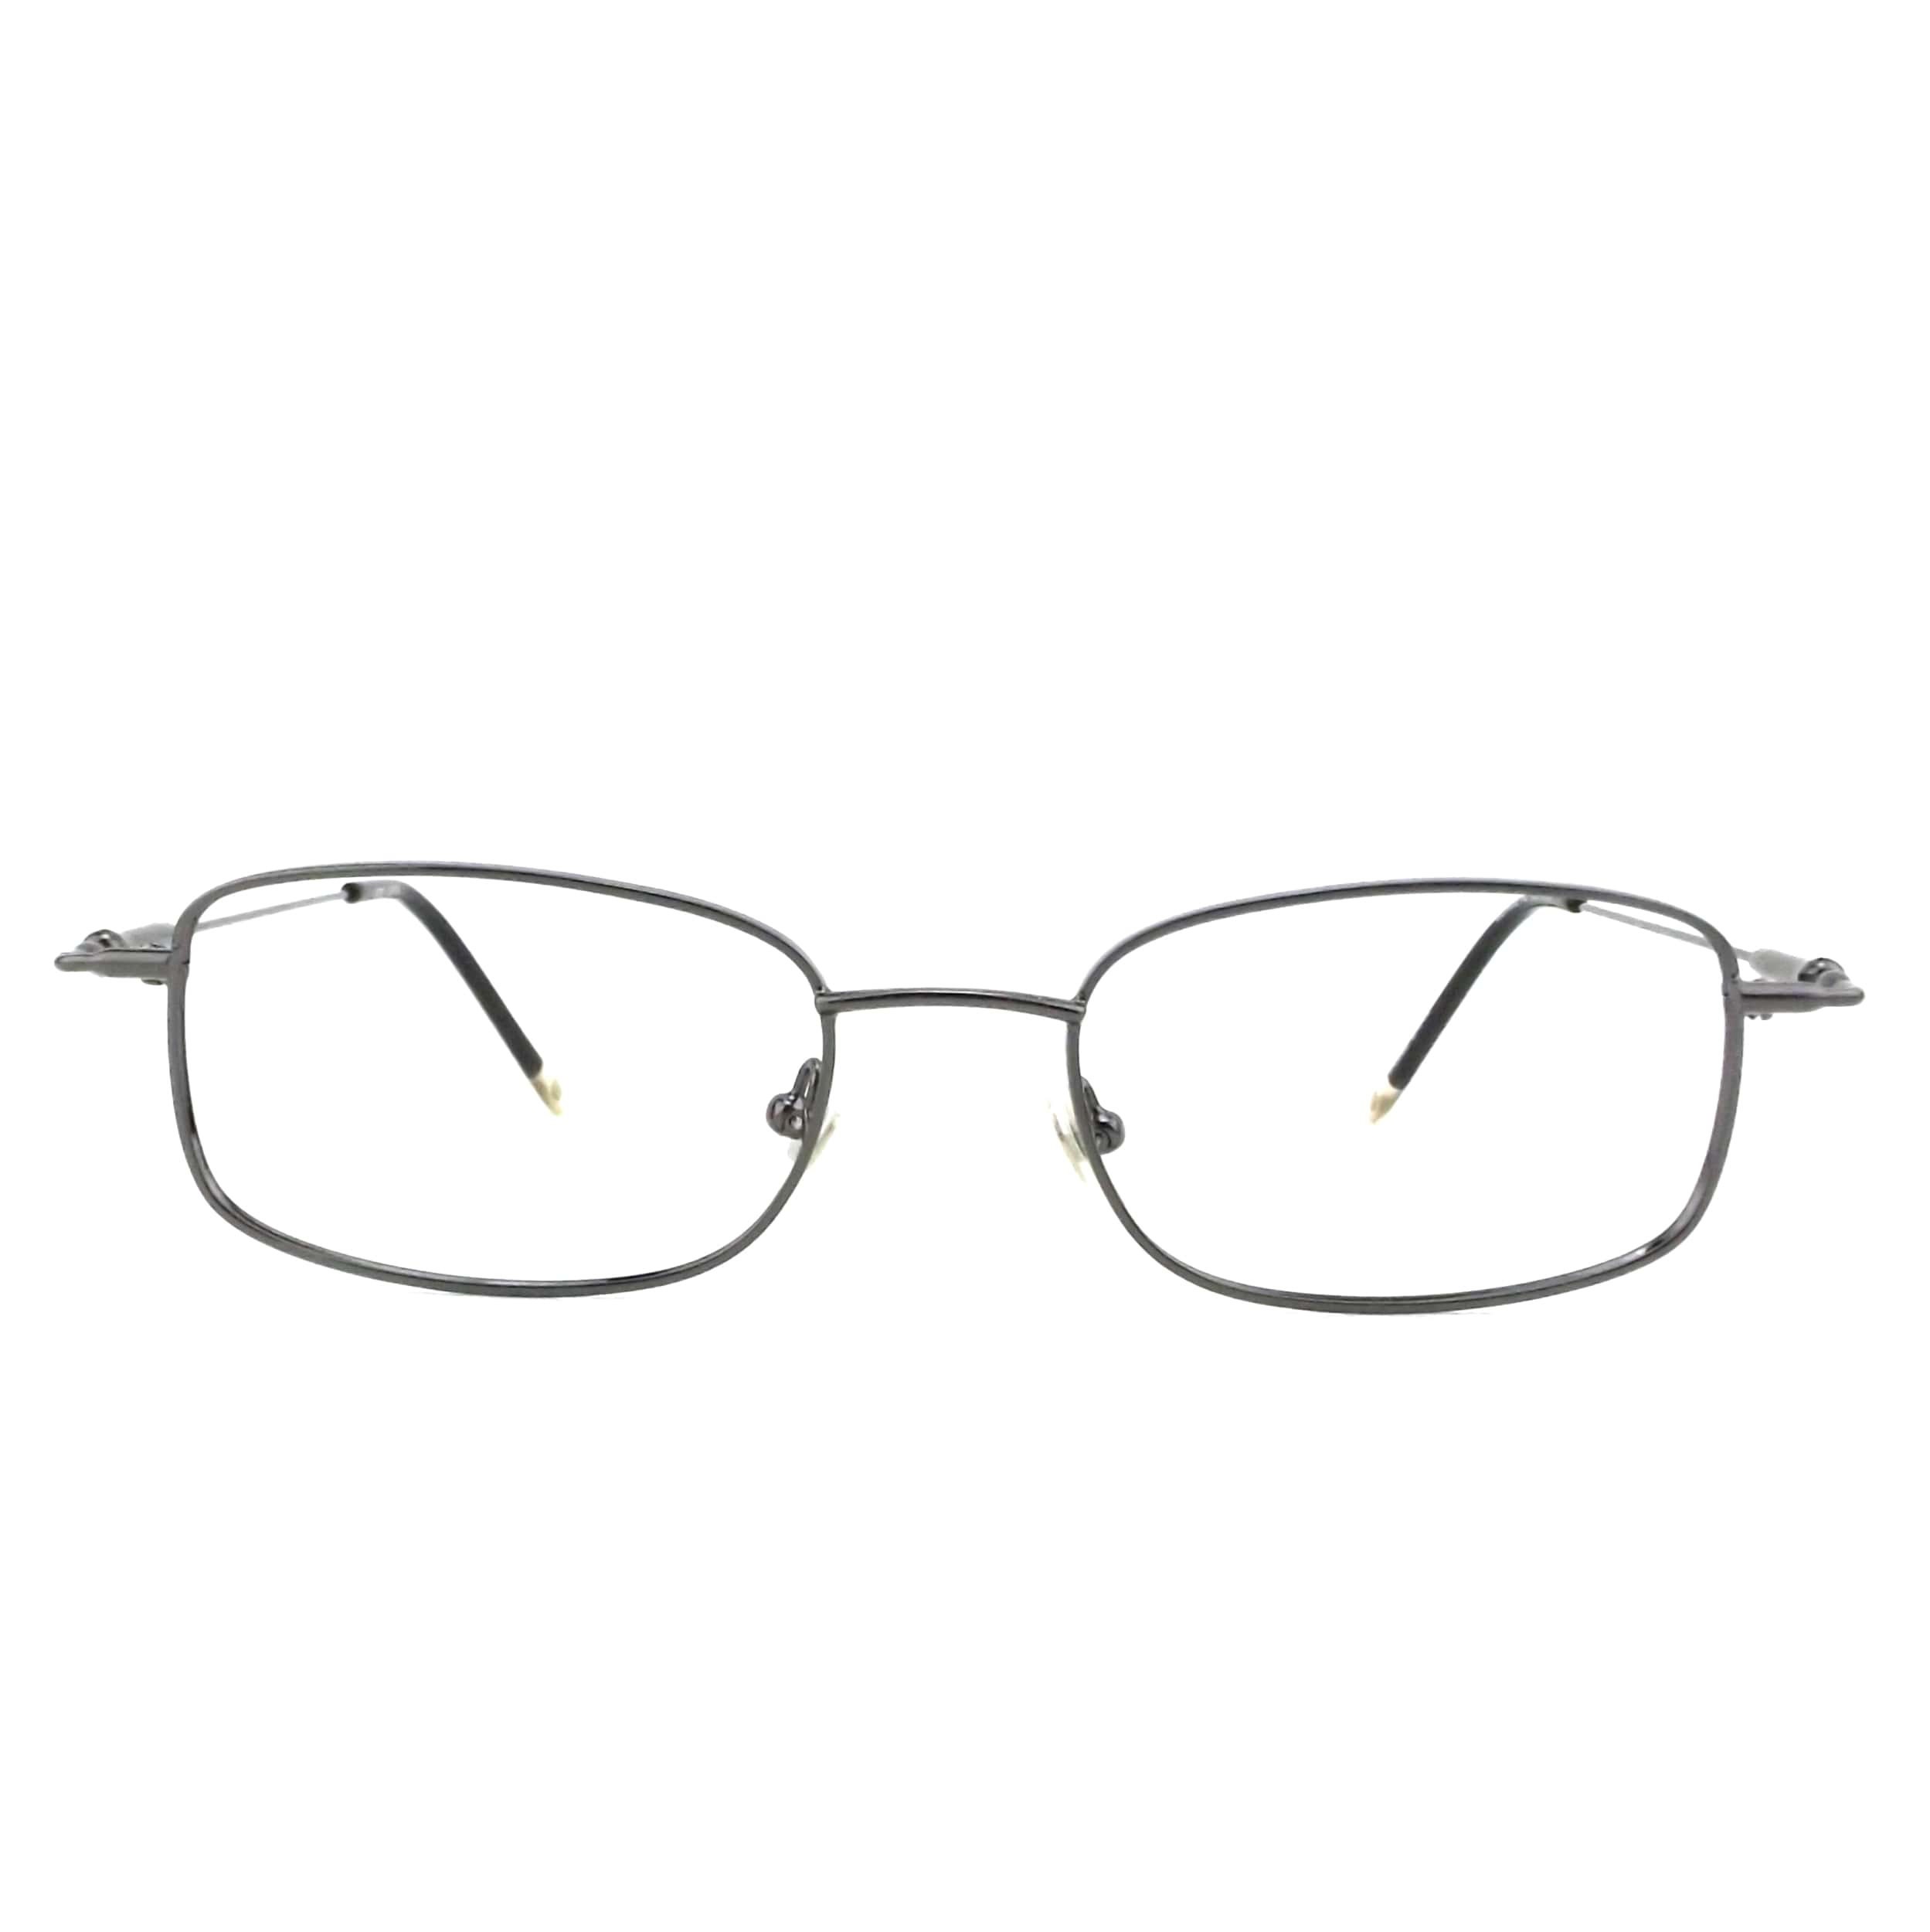 Vintage 80s 90s NOS wire rectangular eyeglasses eye glasses | Etsy